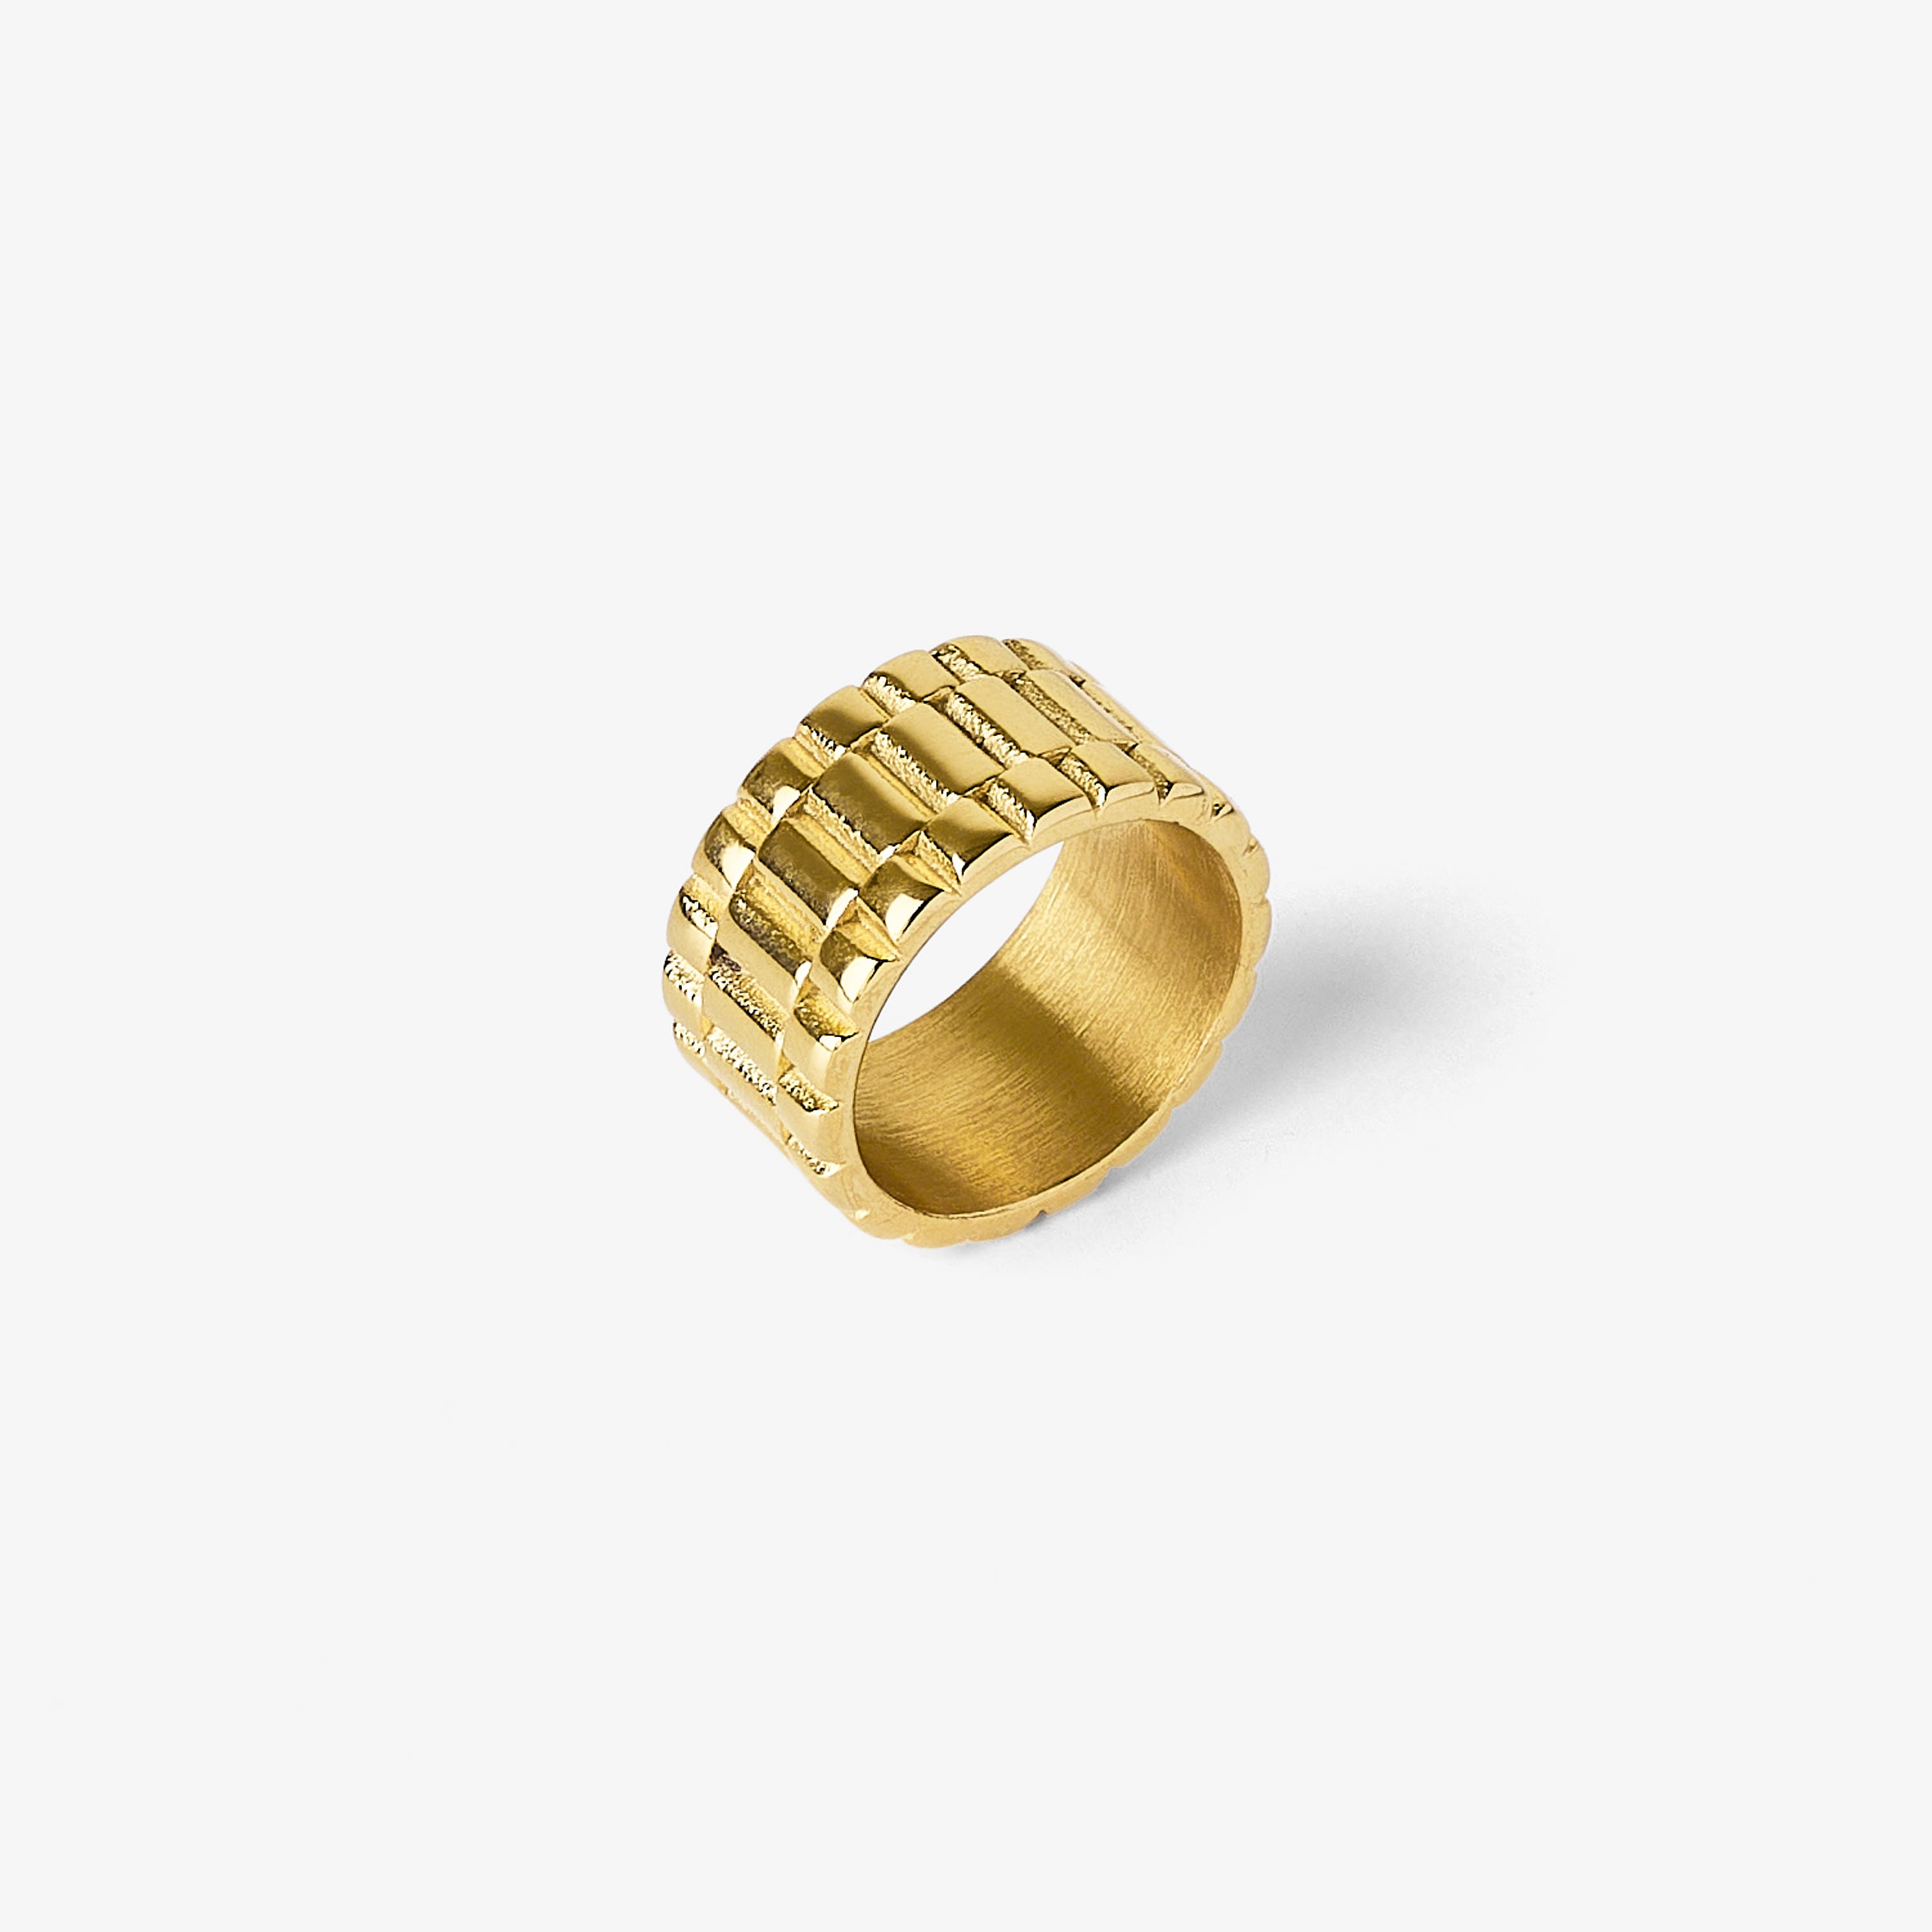 14K Yellow Gold Diamond Fashion Ring 001-130-01296 | Blocher Jewelers |  Ellwood City, PA